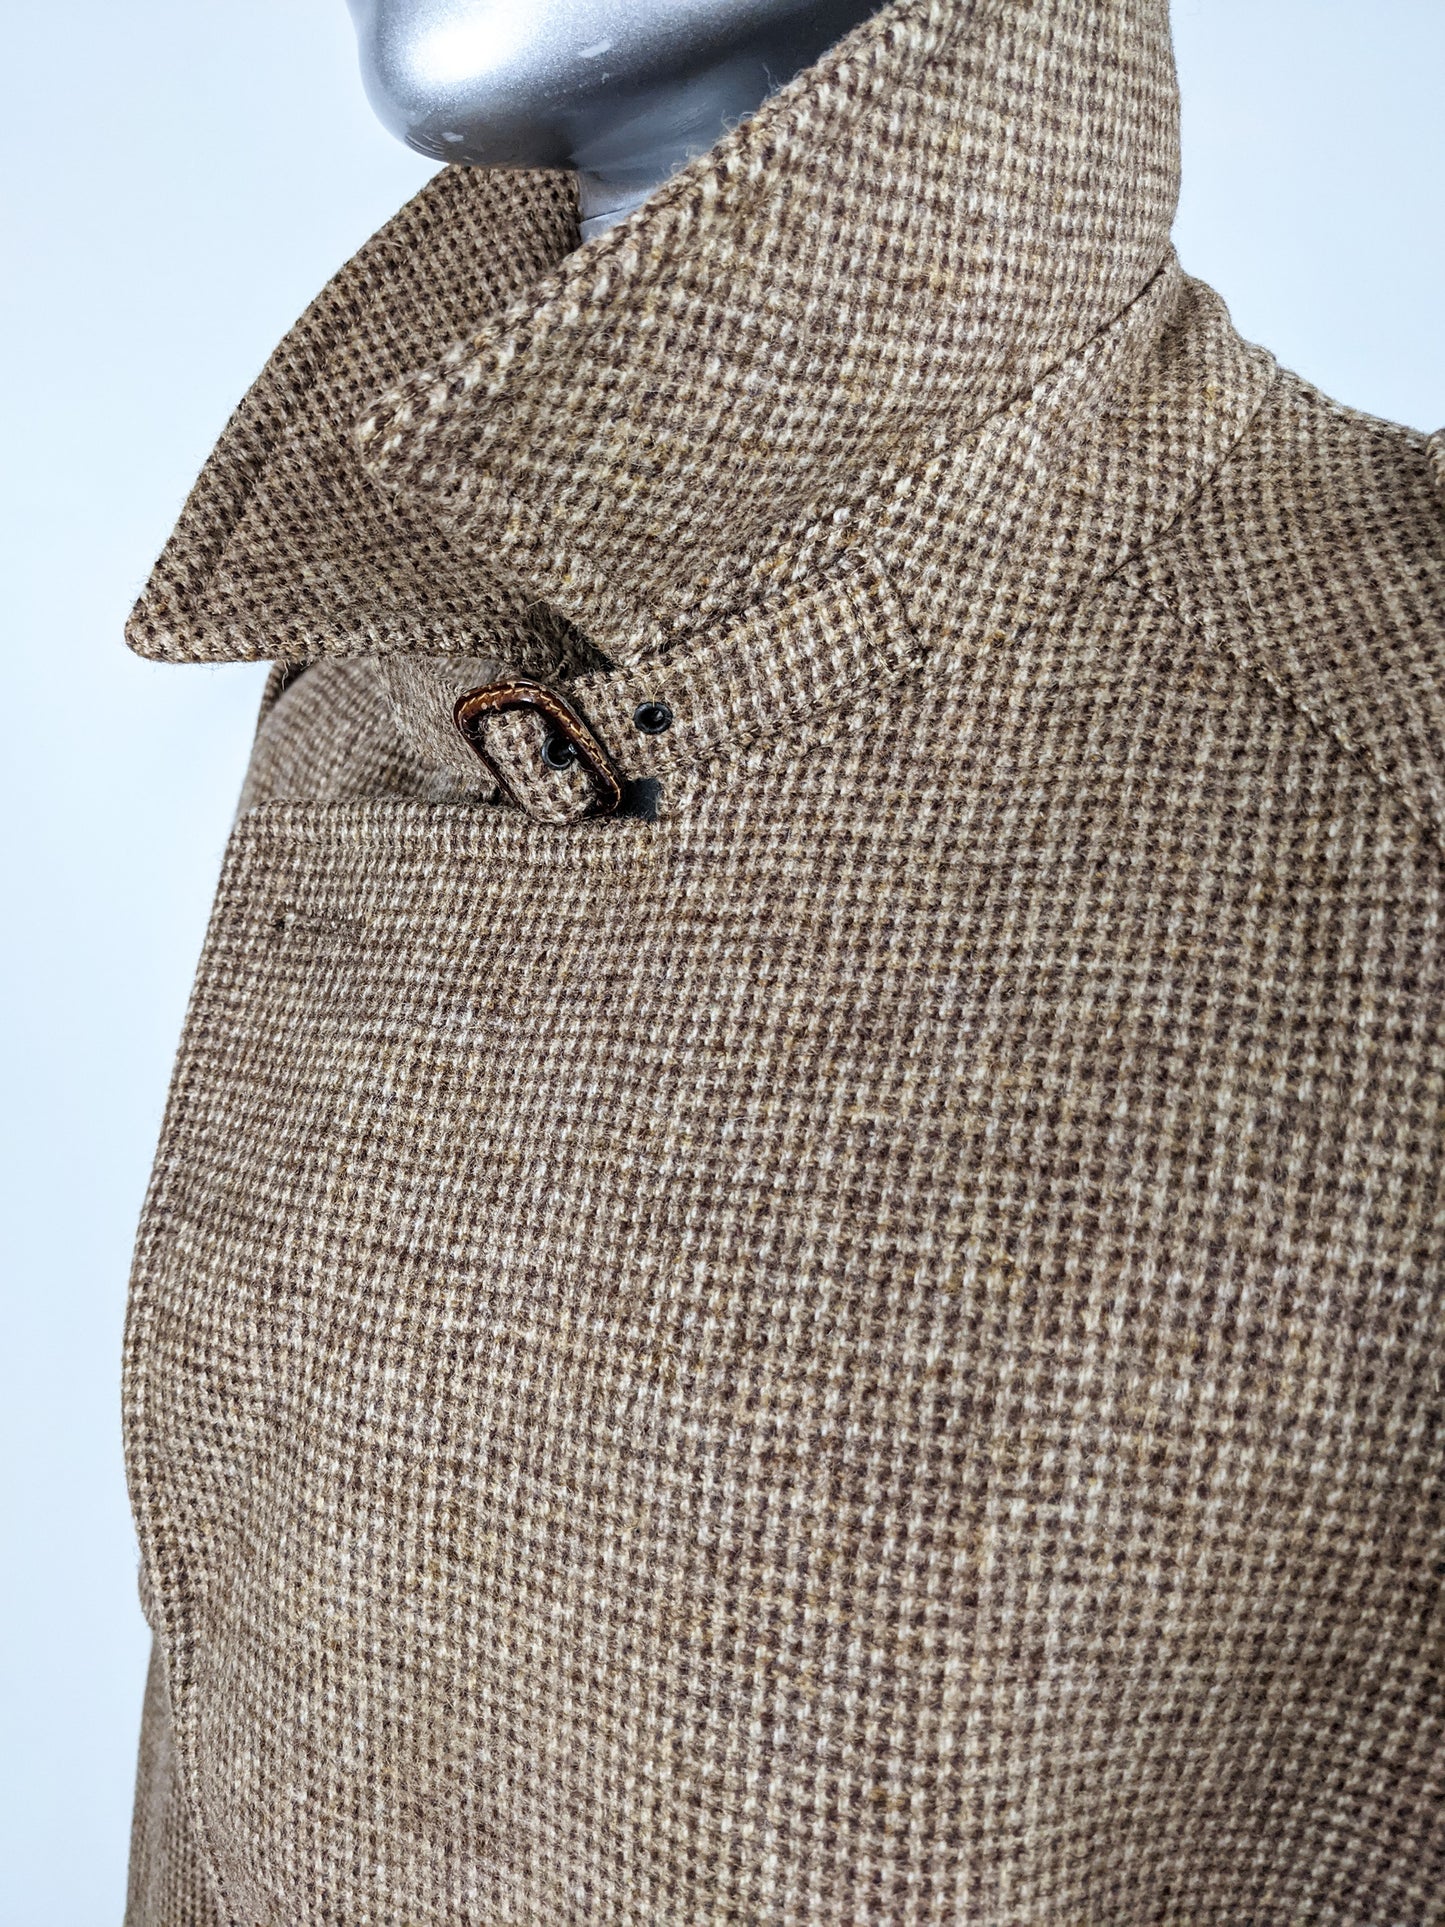 Mens Vintage Double Breasted Brown Tweed Coat, 1970s